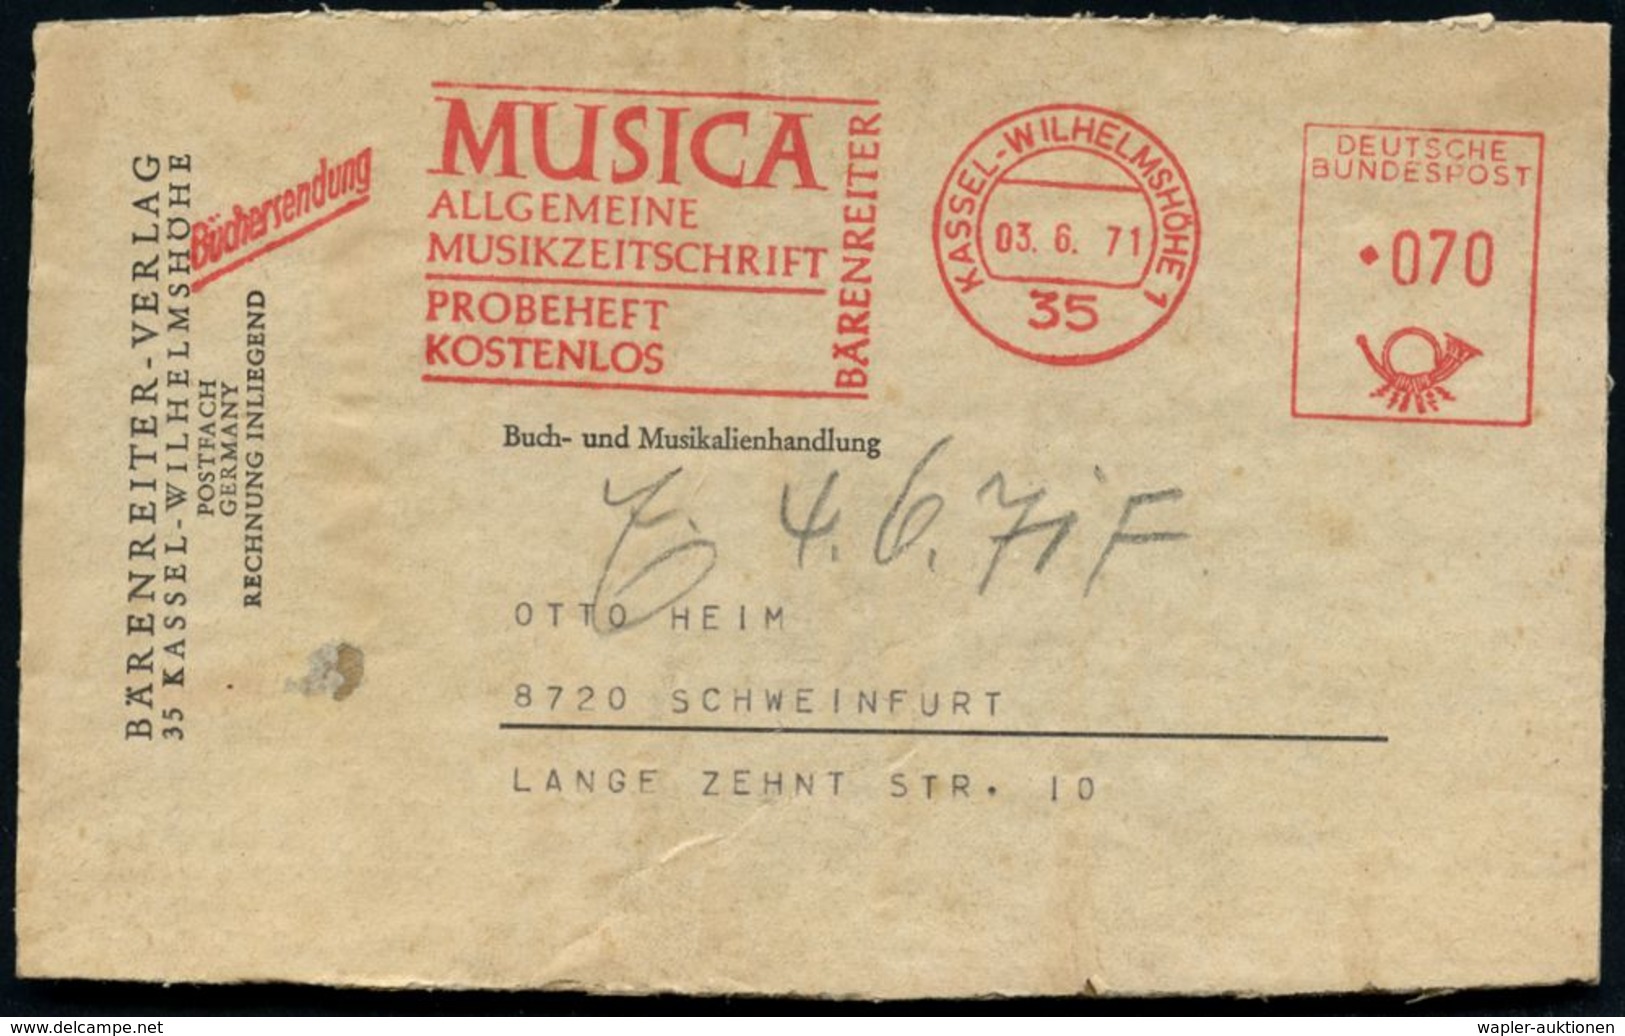 35 KASSEL-WILHELMSHÖHE 1/ MUSICA/ ALLGEM./ MUSIKZEITSCHRIFT../ BÄRENREITER 1971 (3.6.) AFS 070 Pf. + Zusatz "Büchersendu - Muziek